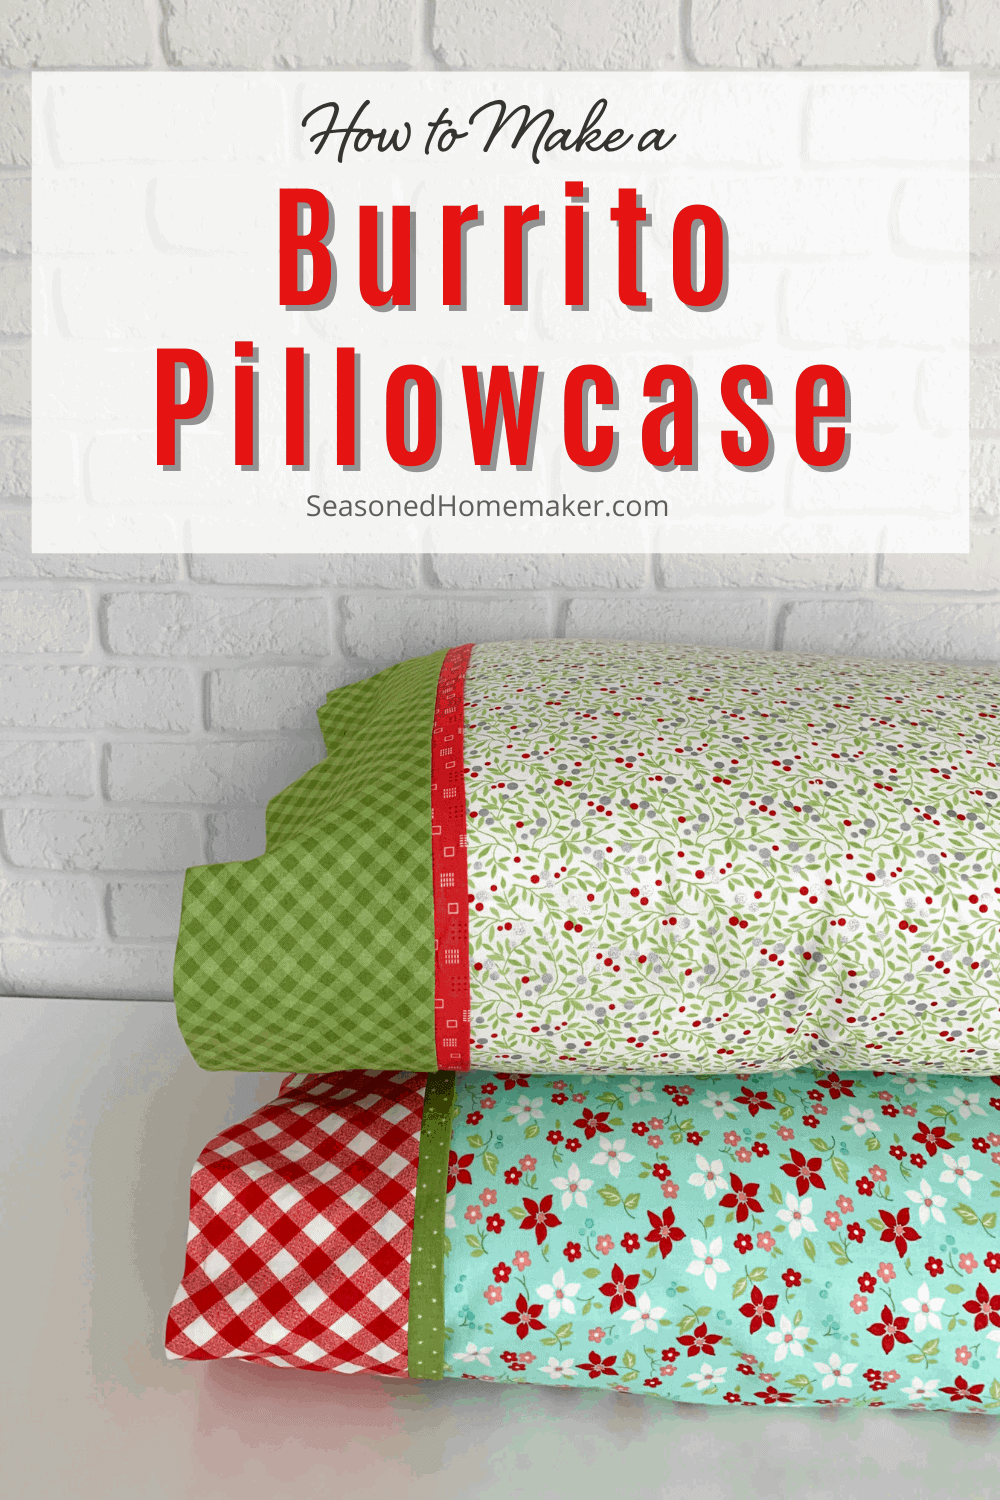 How to Make a Pillowcase Using the Burrito Method